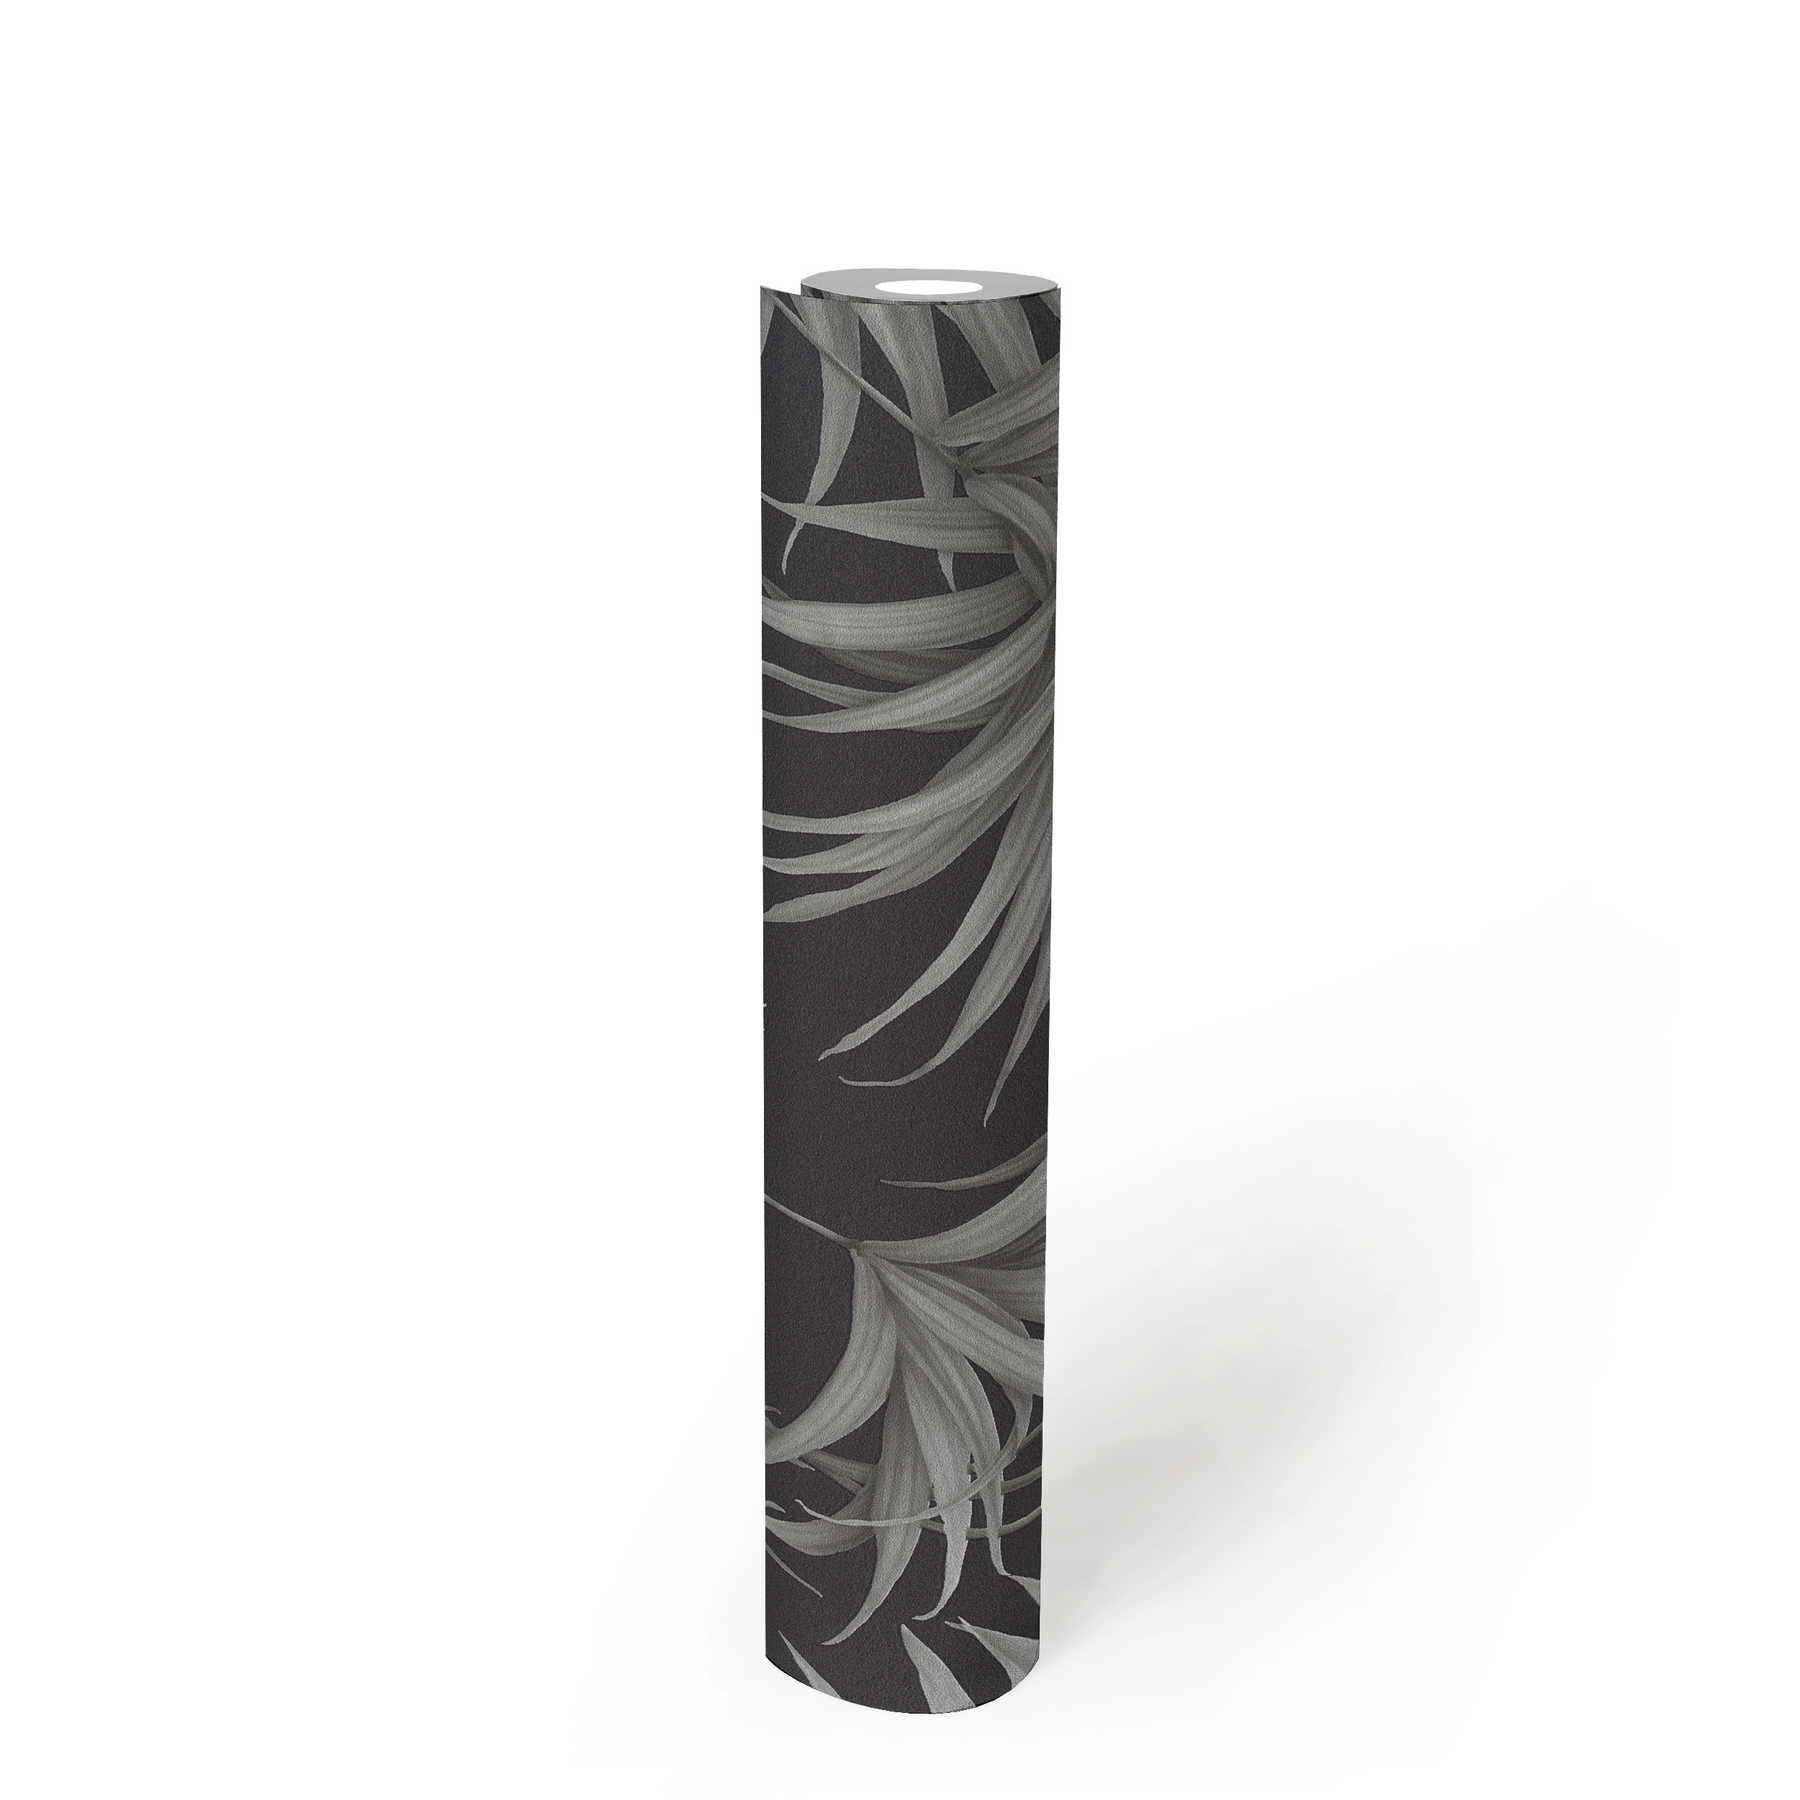             Tropisch behang met varenbladeren - grijs, zwart
        